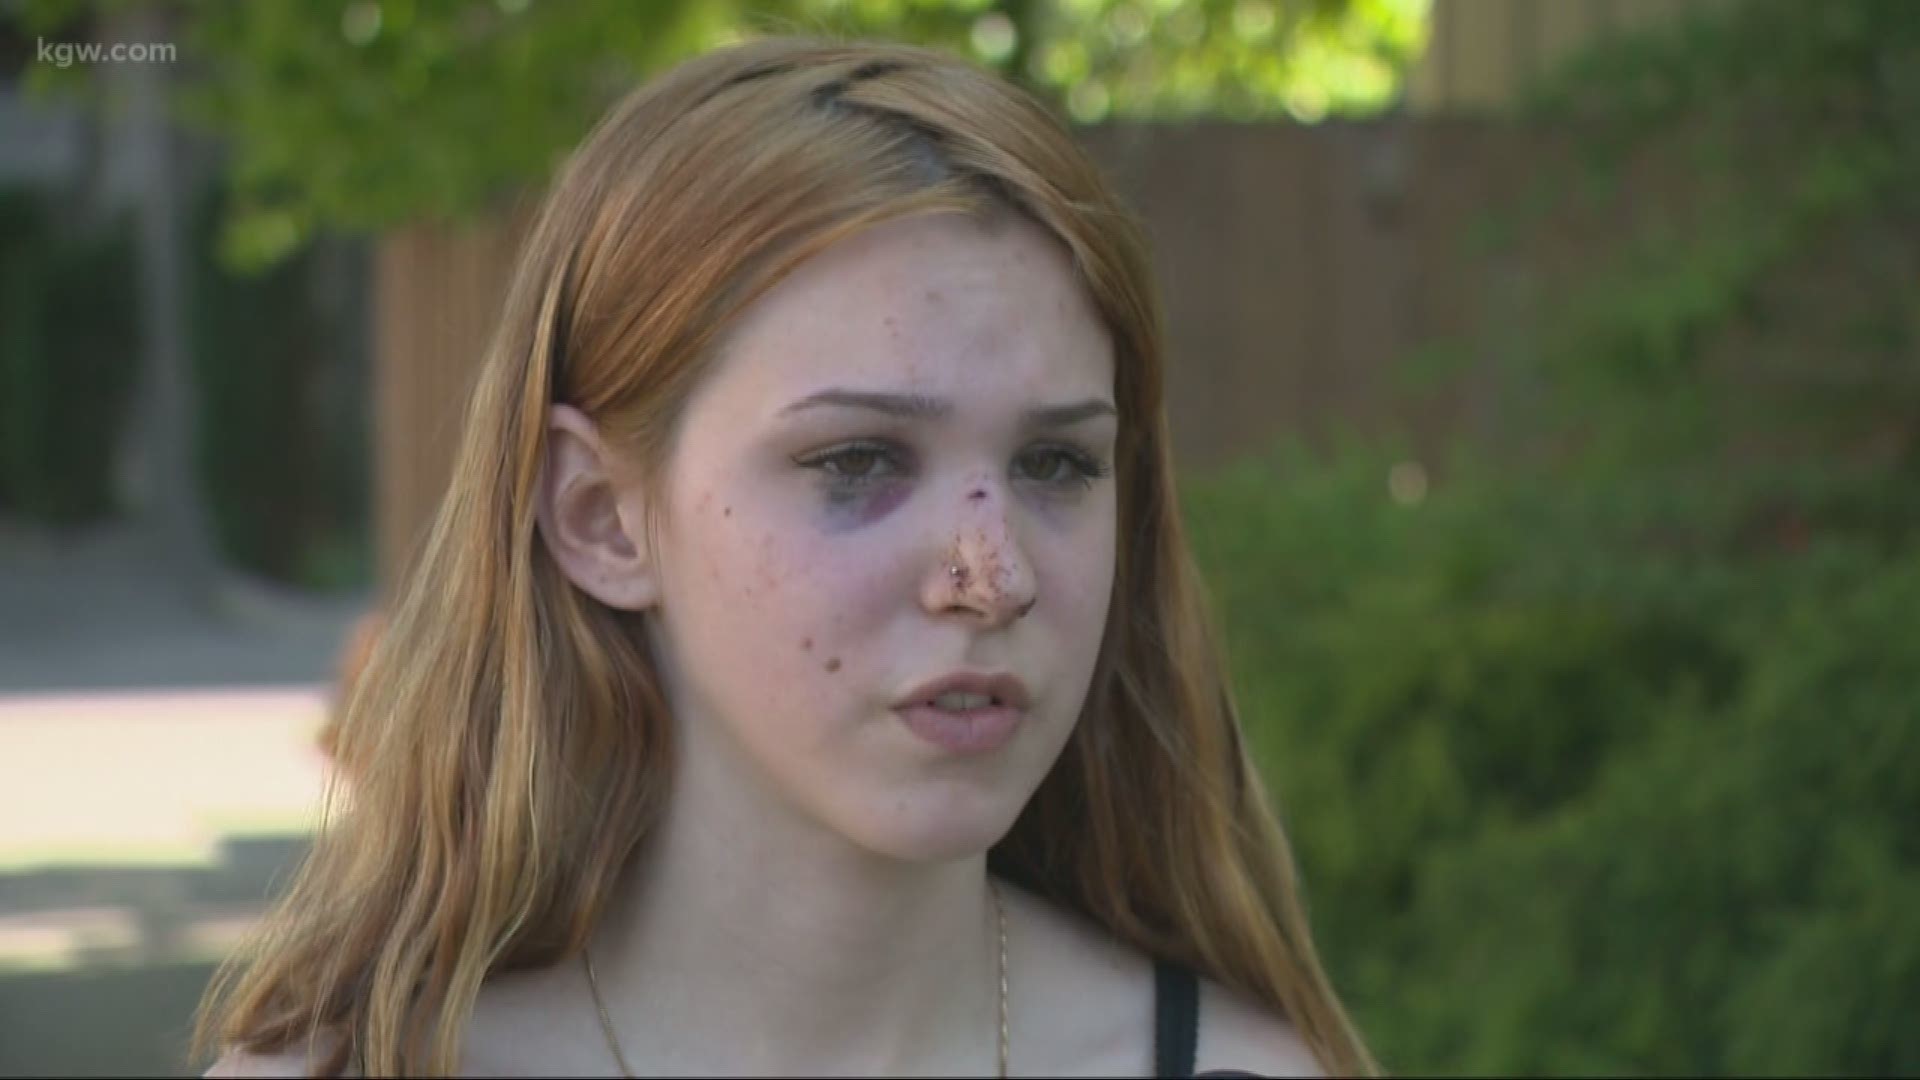 Teens beat up near Gresham park